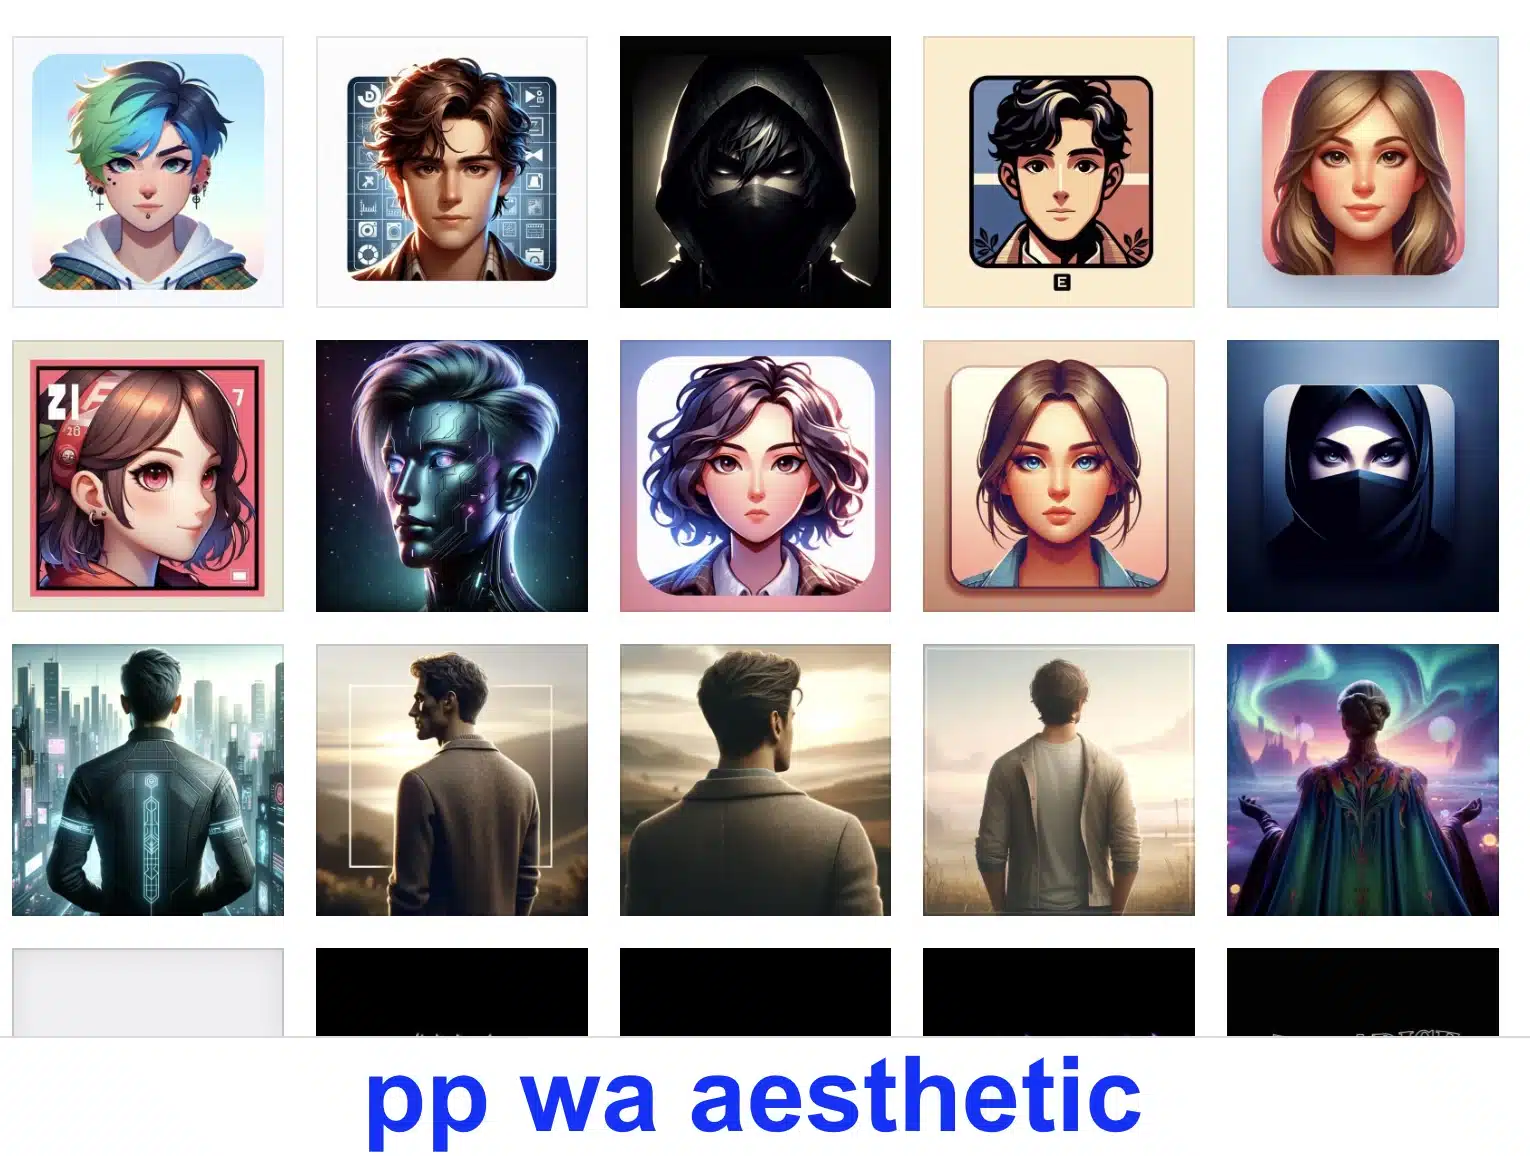 pp wa aesthetic